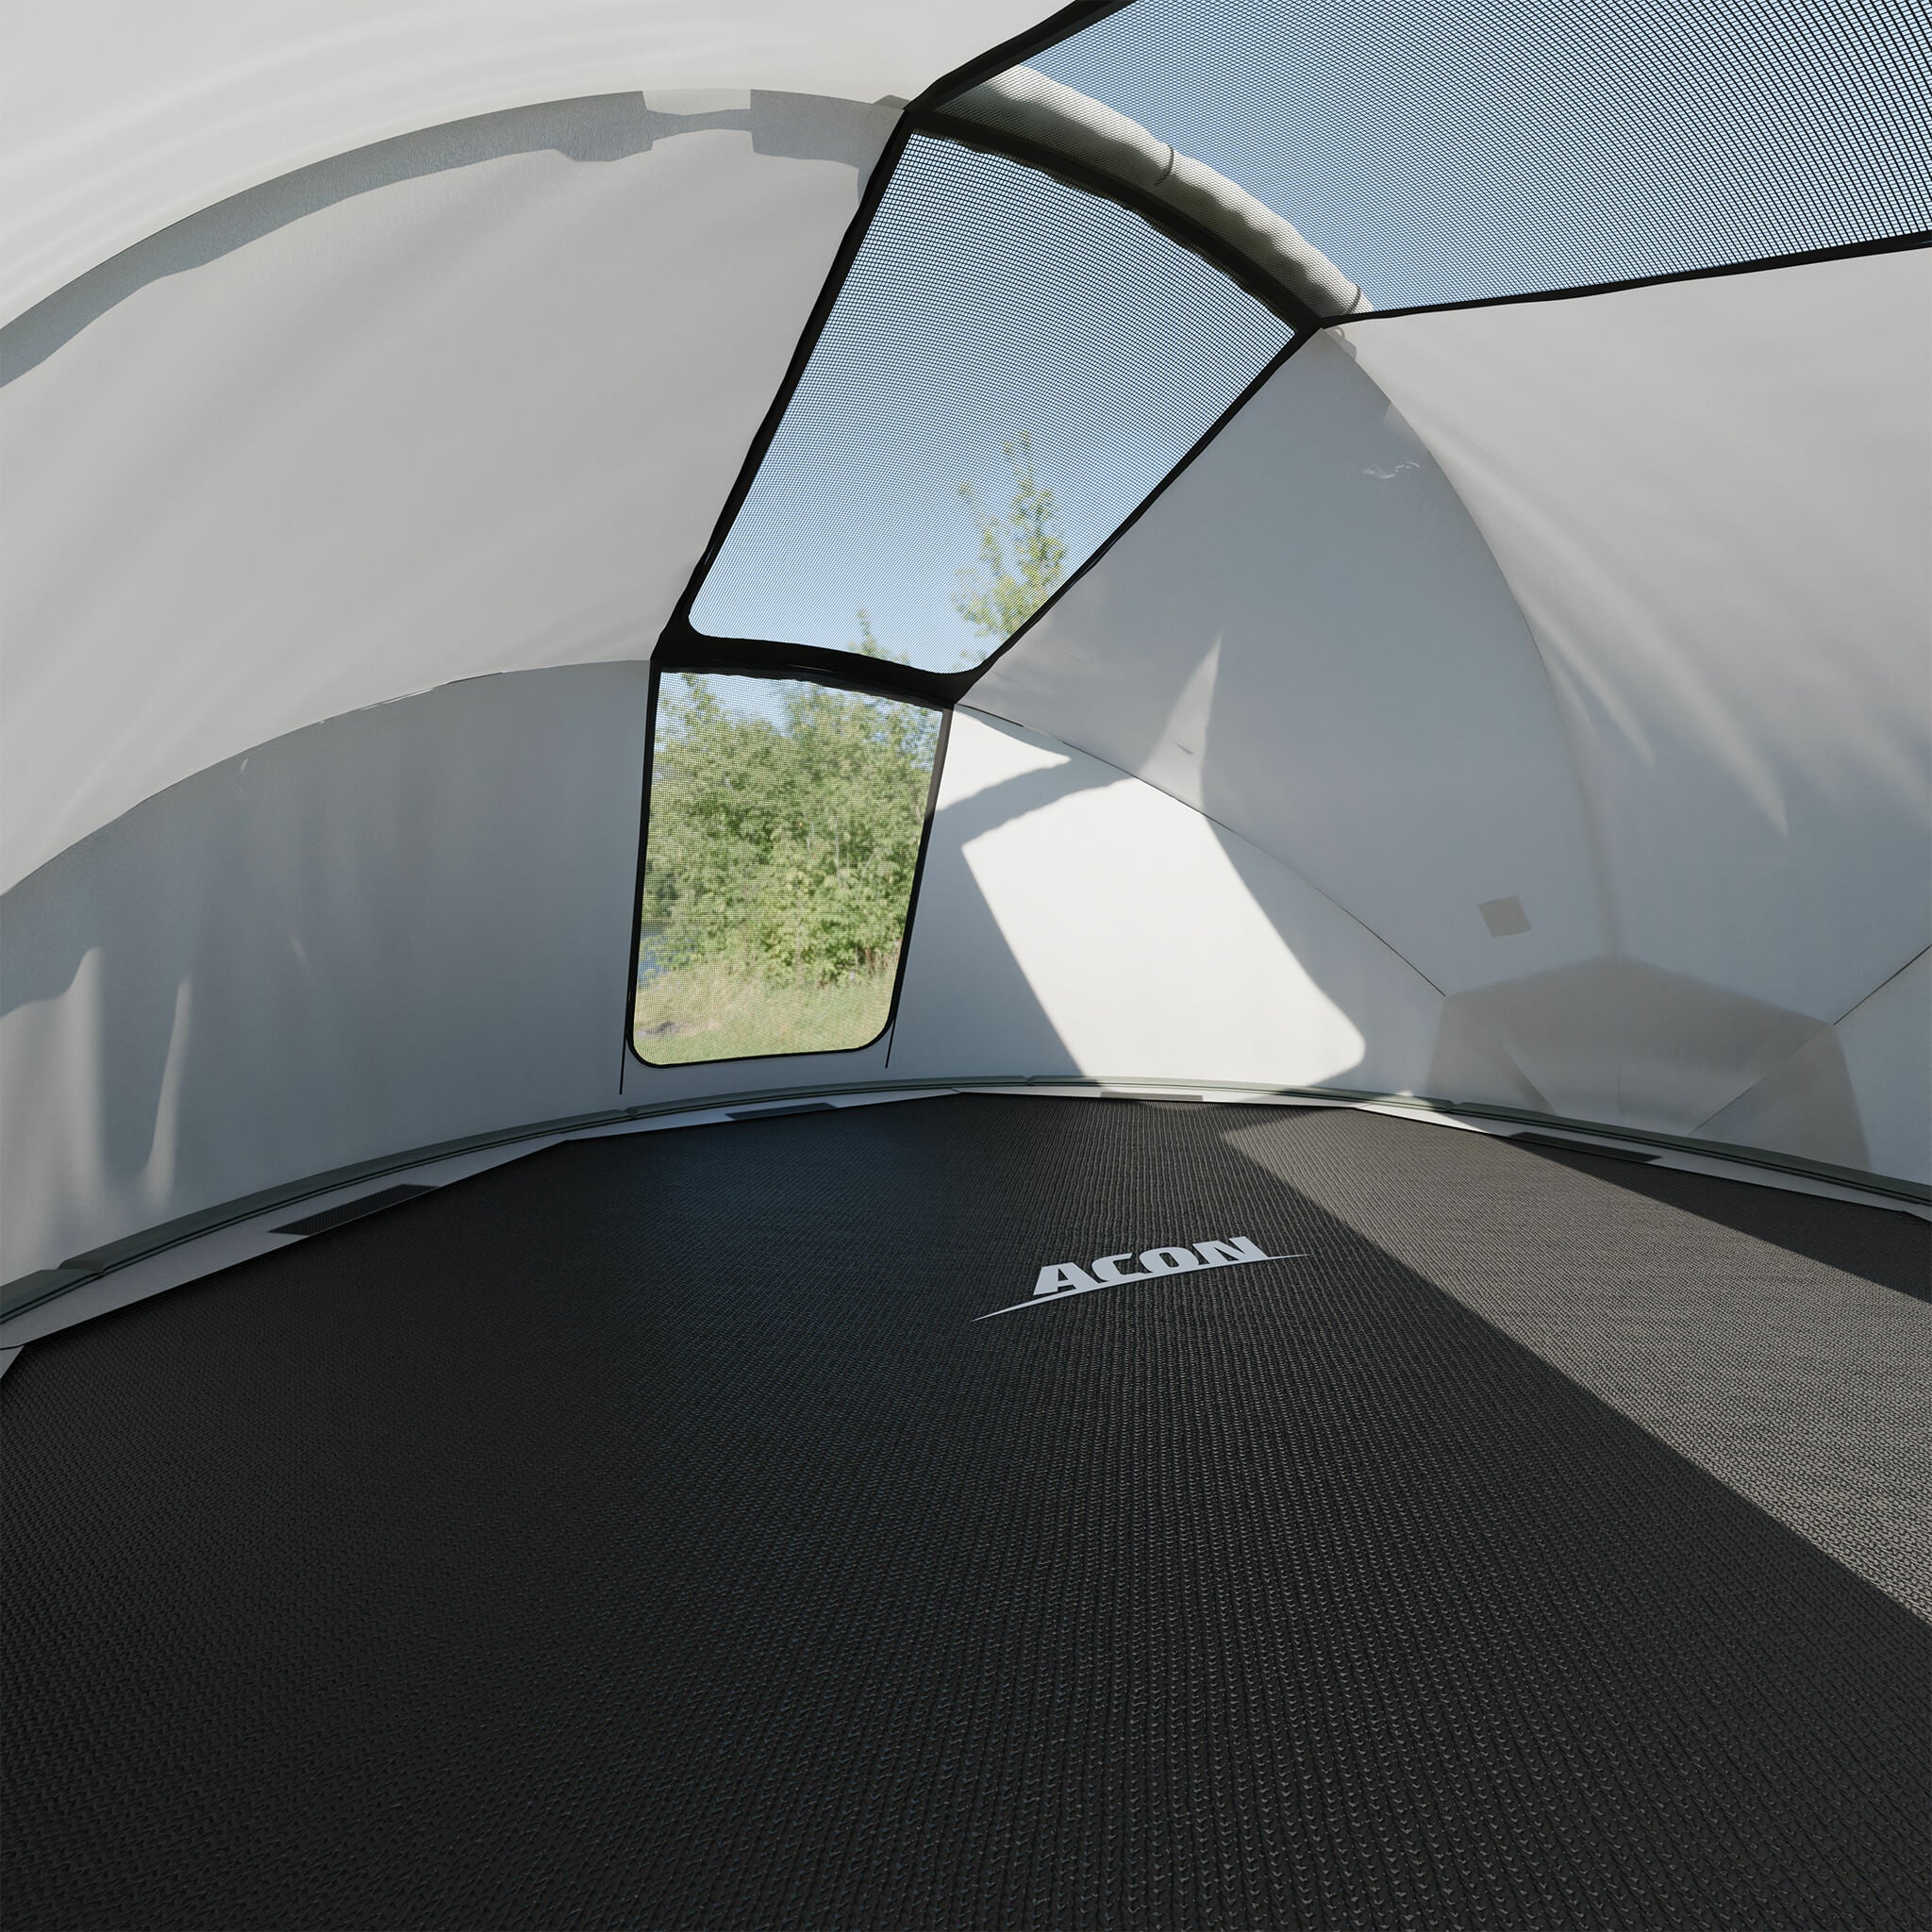 Acon trampoline tent interior on trampoline doors open